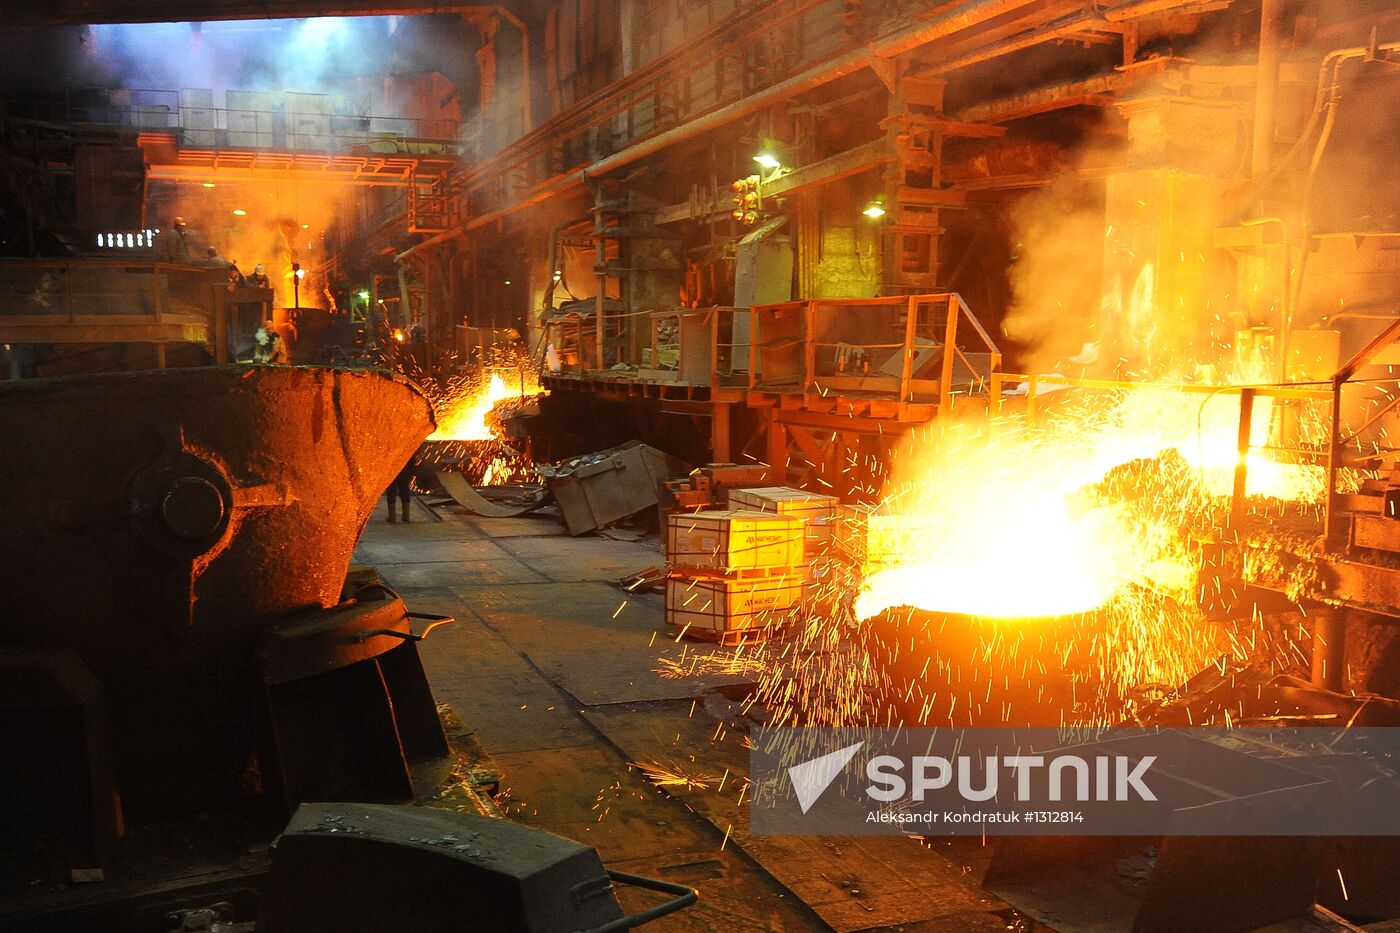 Work of Ufaleynickel factory in Chelyabinsk region